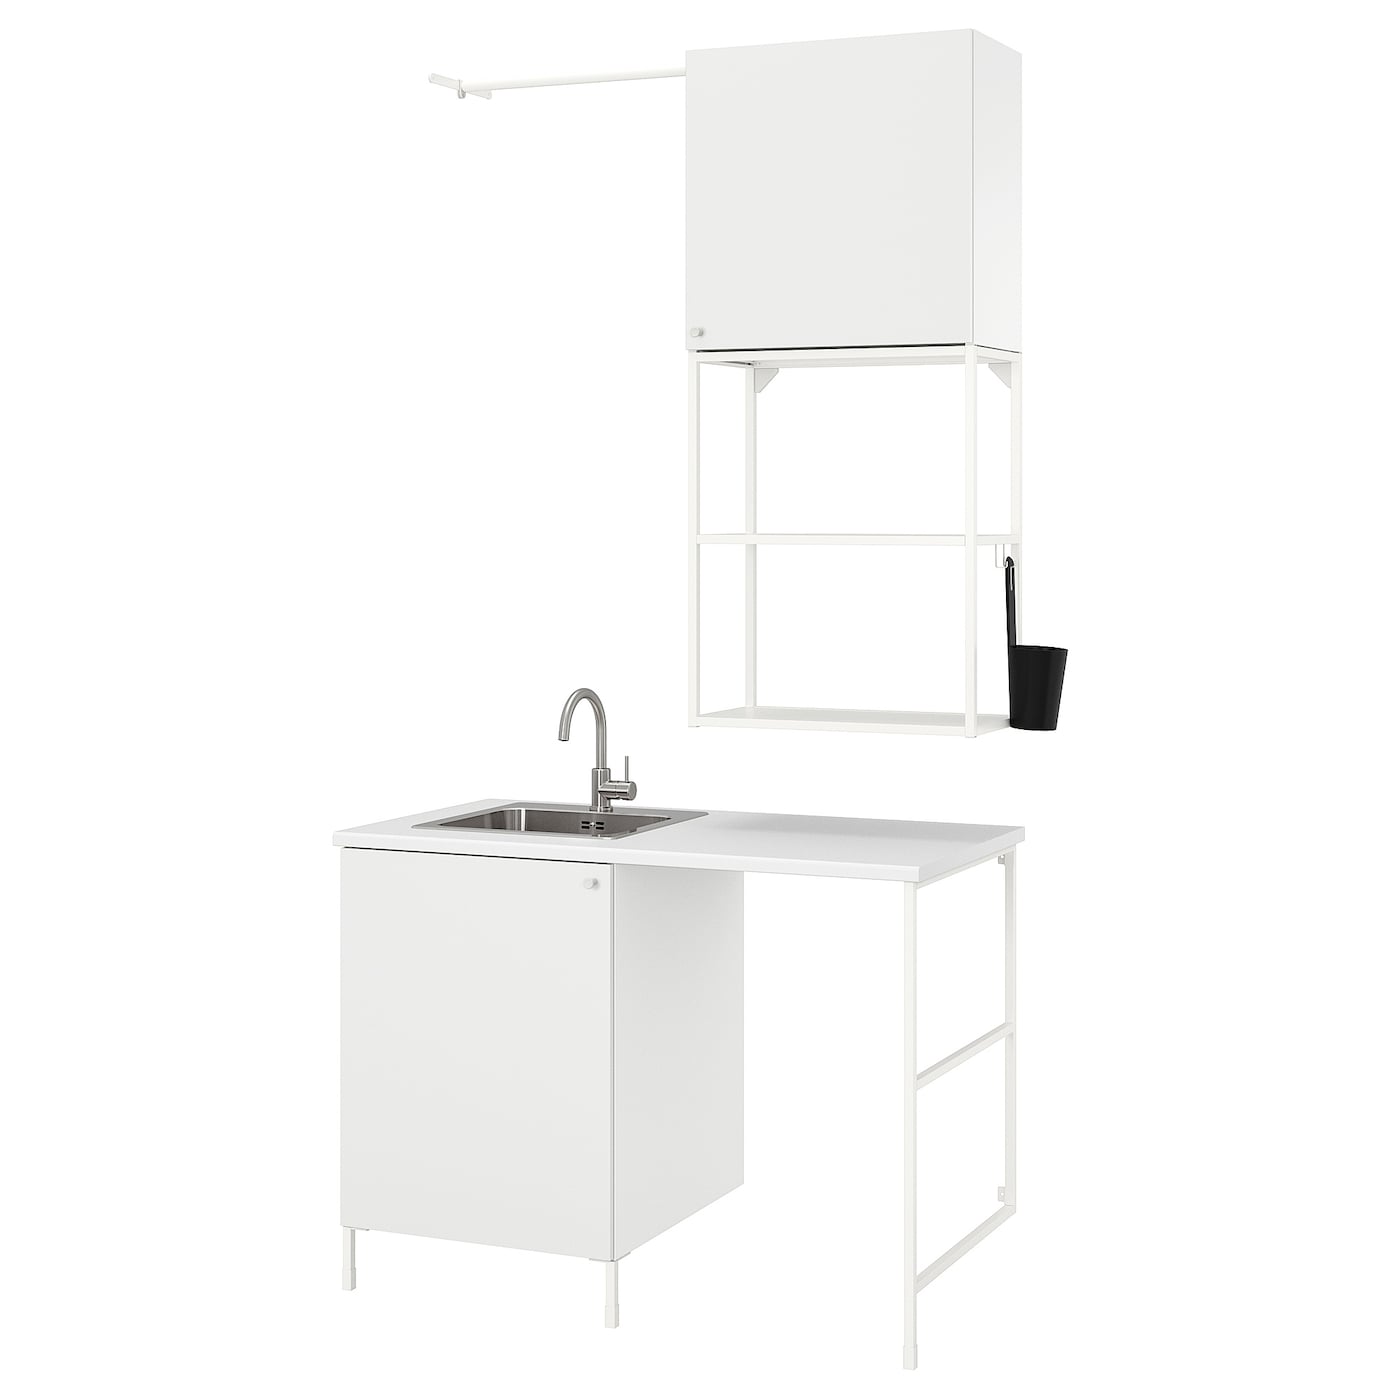 Комбинация шкафа для постирочной и ванной комнаты -  ENHET  IKEA/ ЭНХЕТ ИКЕА, 139x63,5x87,5 см, белый